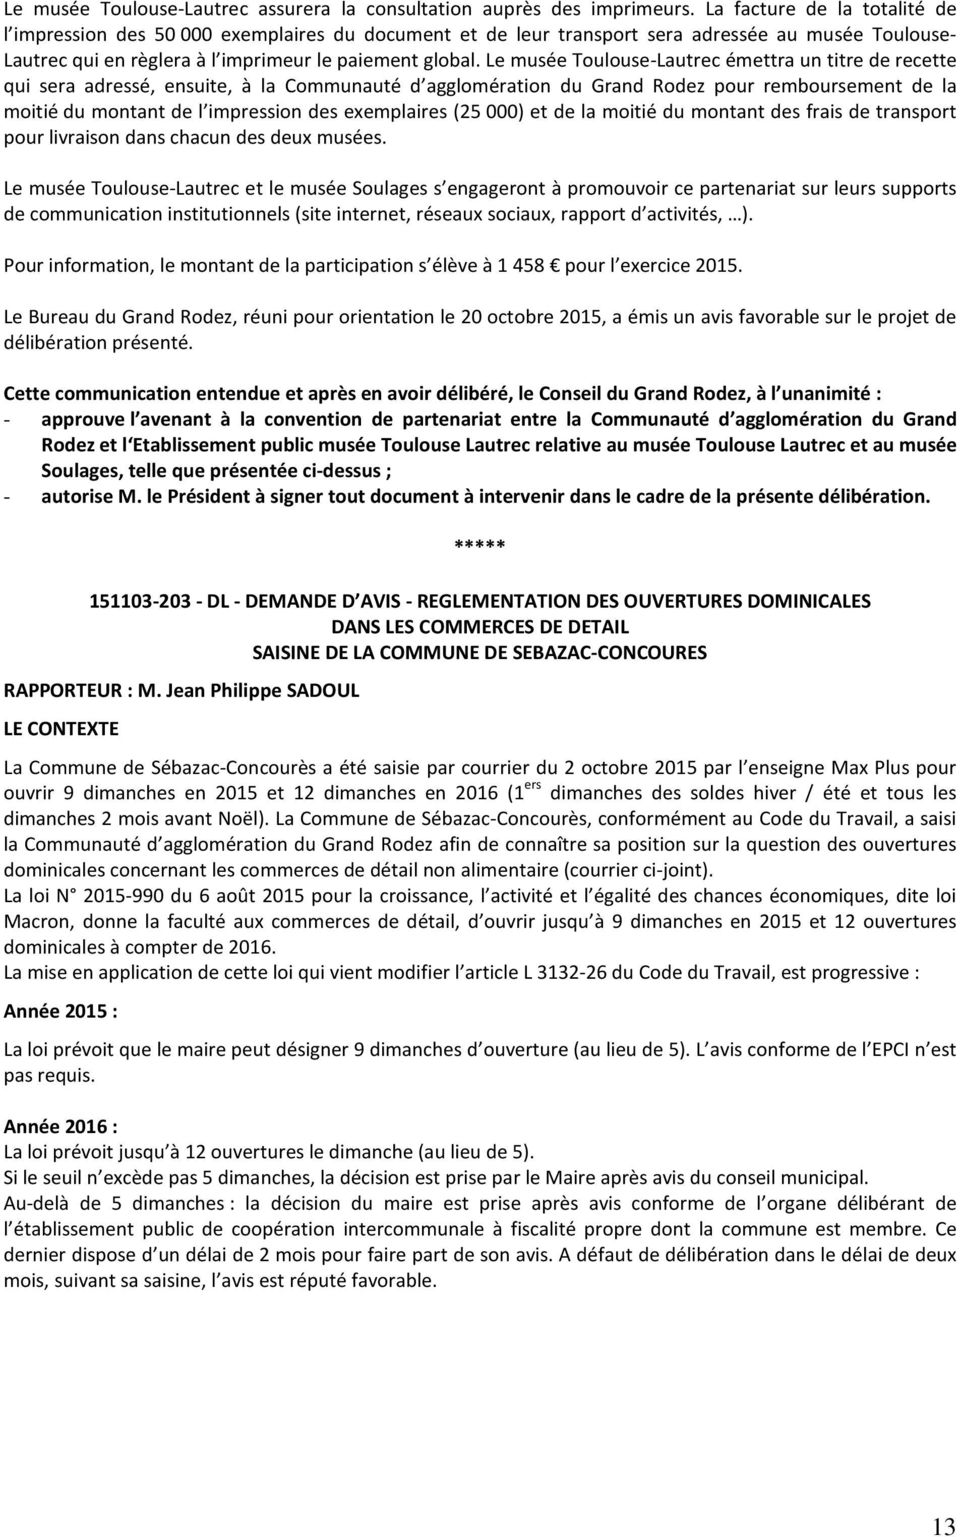 Le musée Toulouse-Lautrec émettra un titre de recette qui sera adressé, ensuite, à la Communauté d agglomération du Grand Rodez pour remboursement de la moitié du montant de l impression des